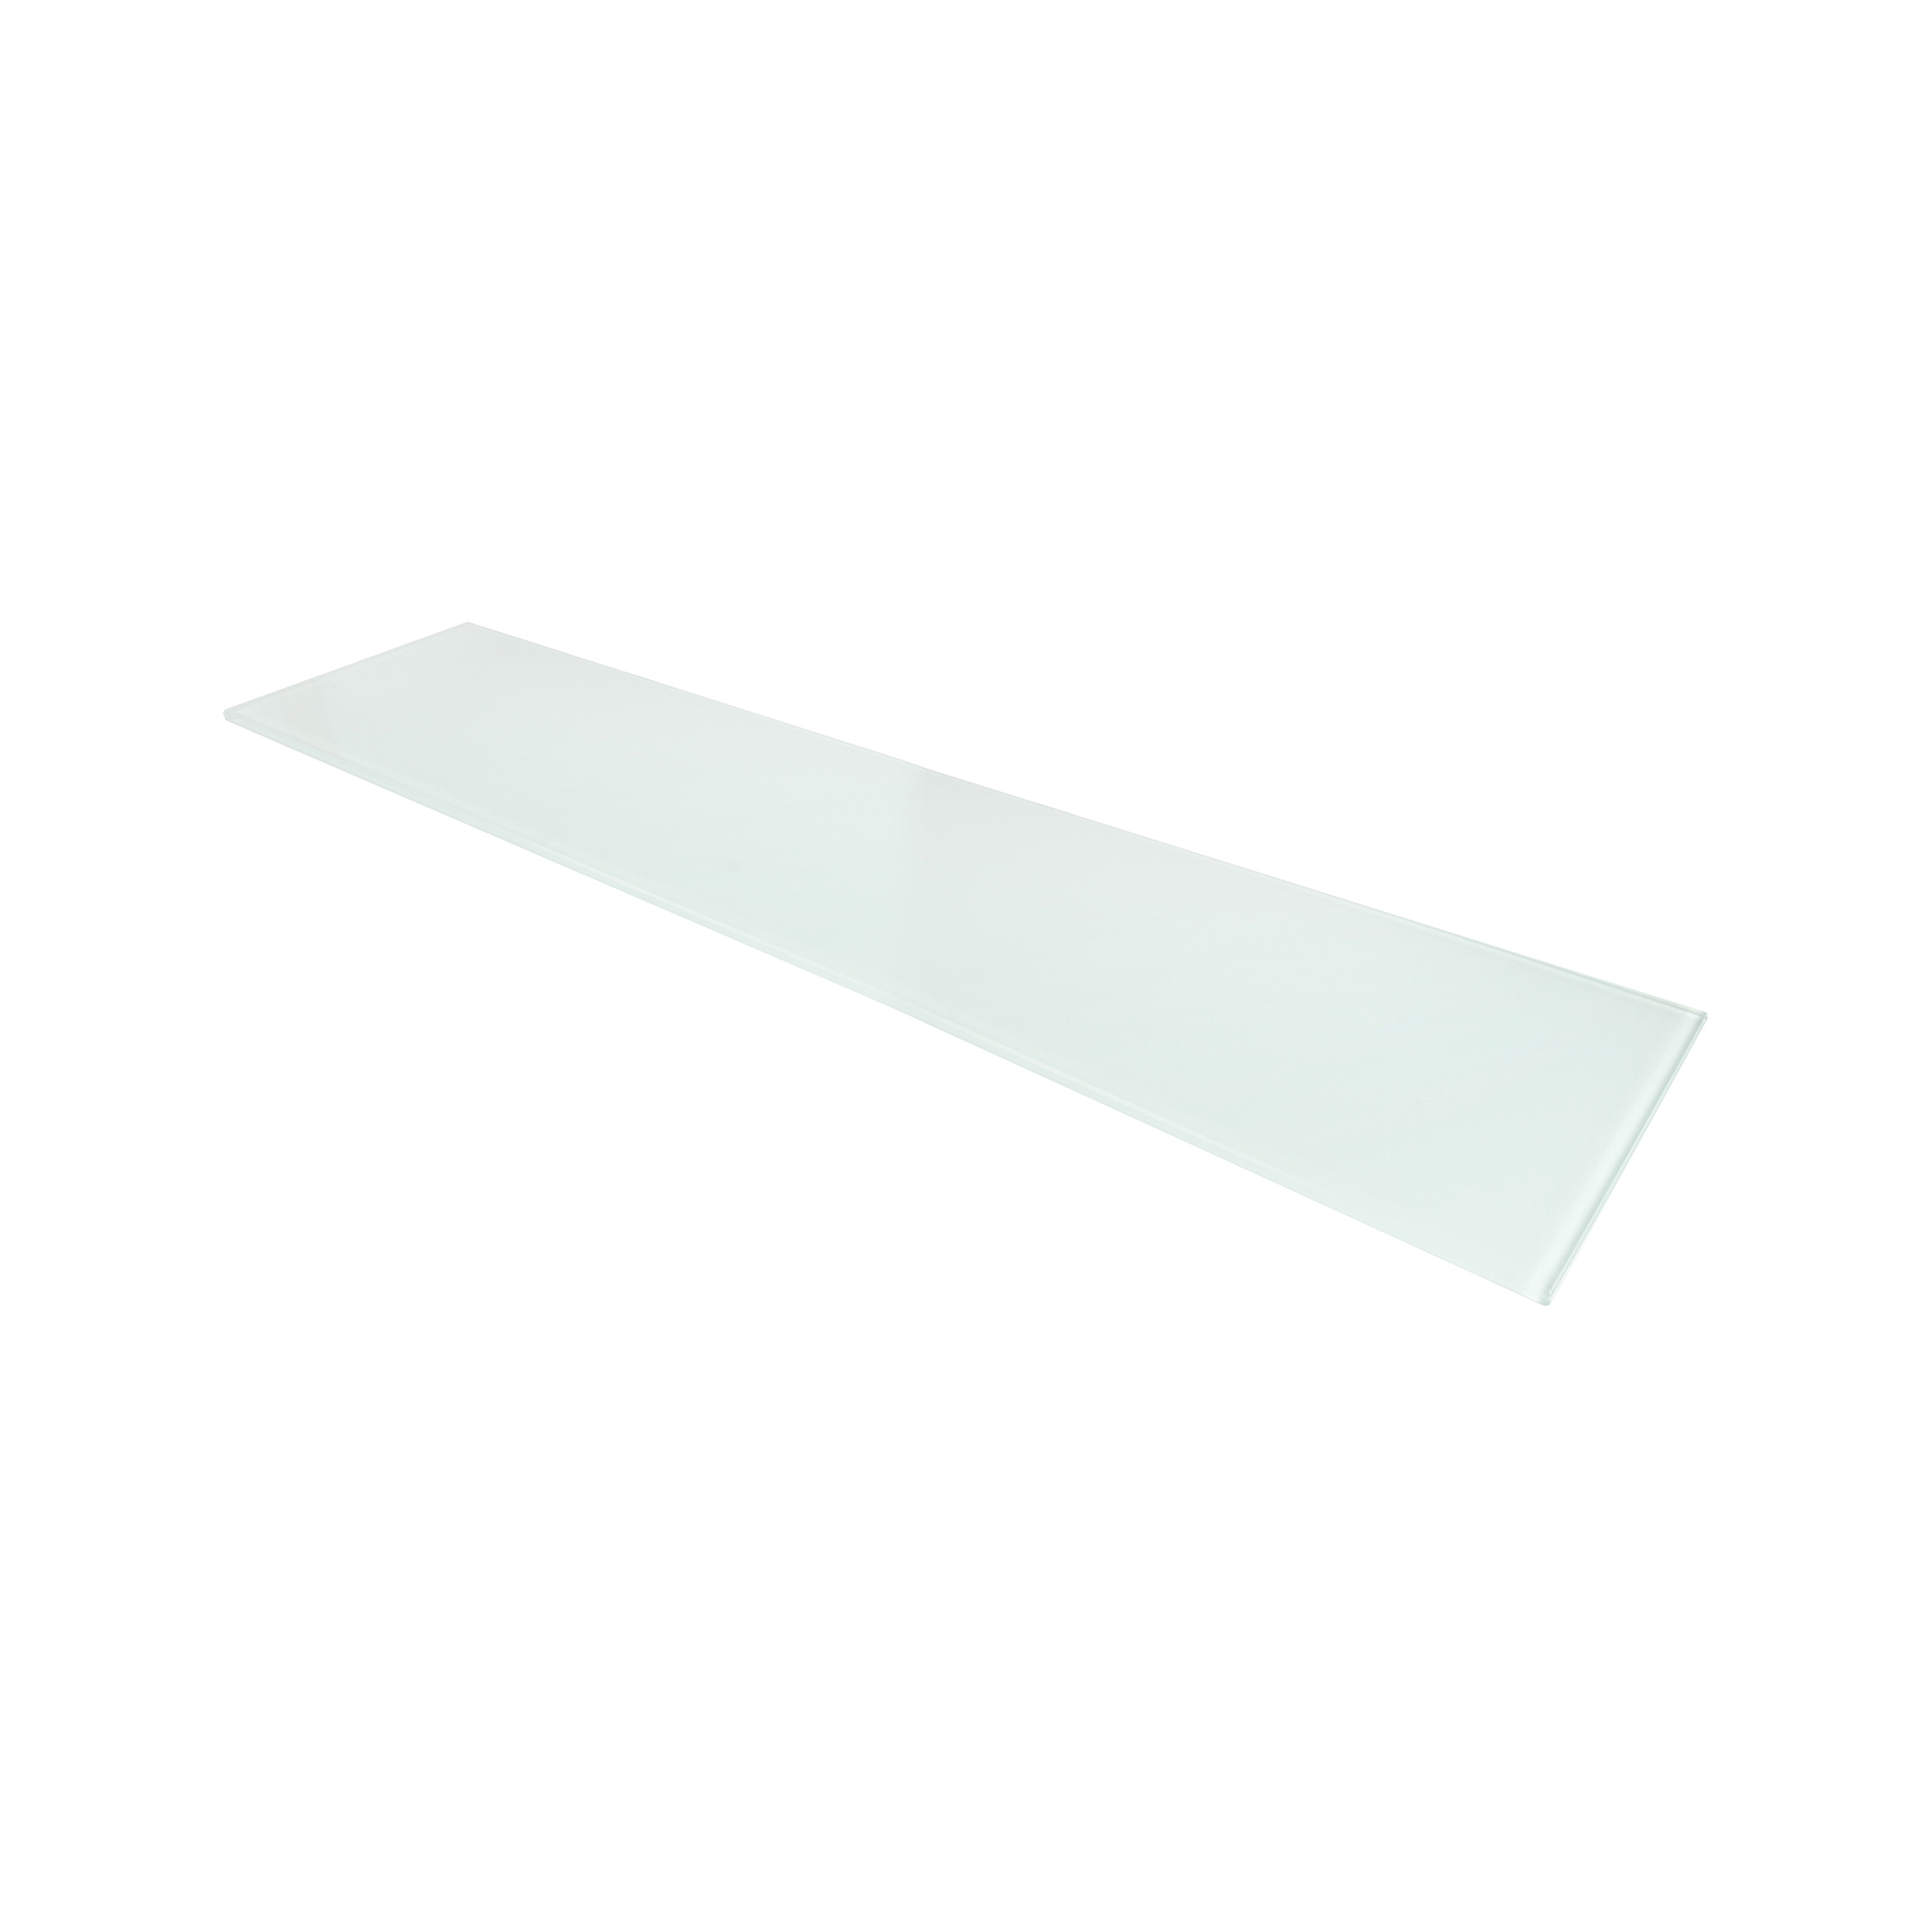 Étagère rectangulaire en verre Finition blanche | Mesures 600*6*150mm | Épaisseur de l'étagère : 6 mm | 1 unité